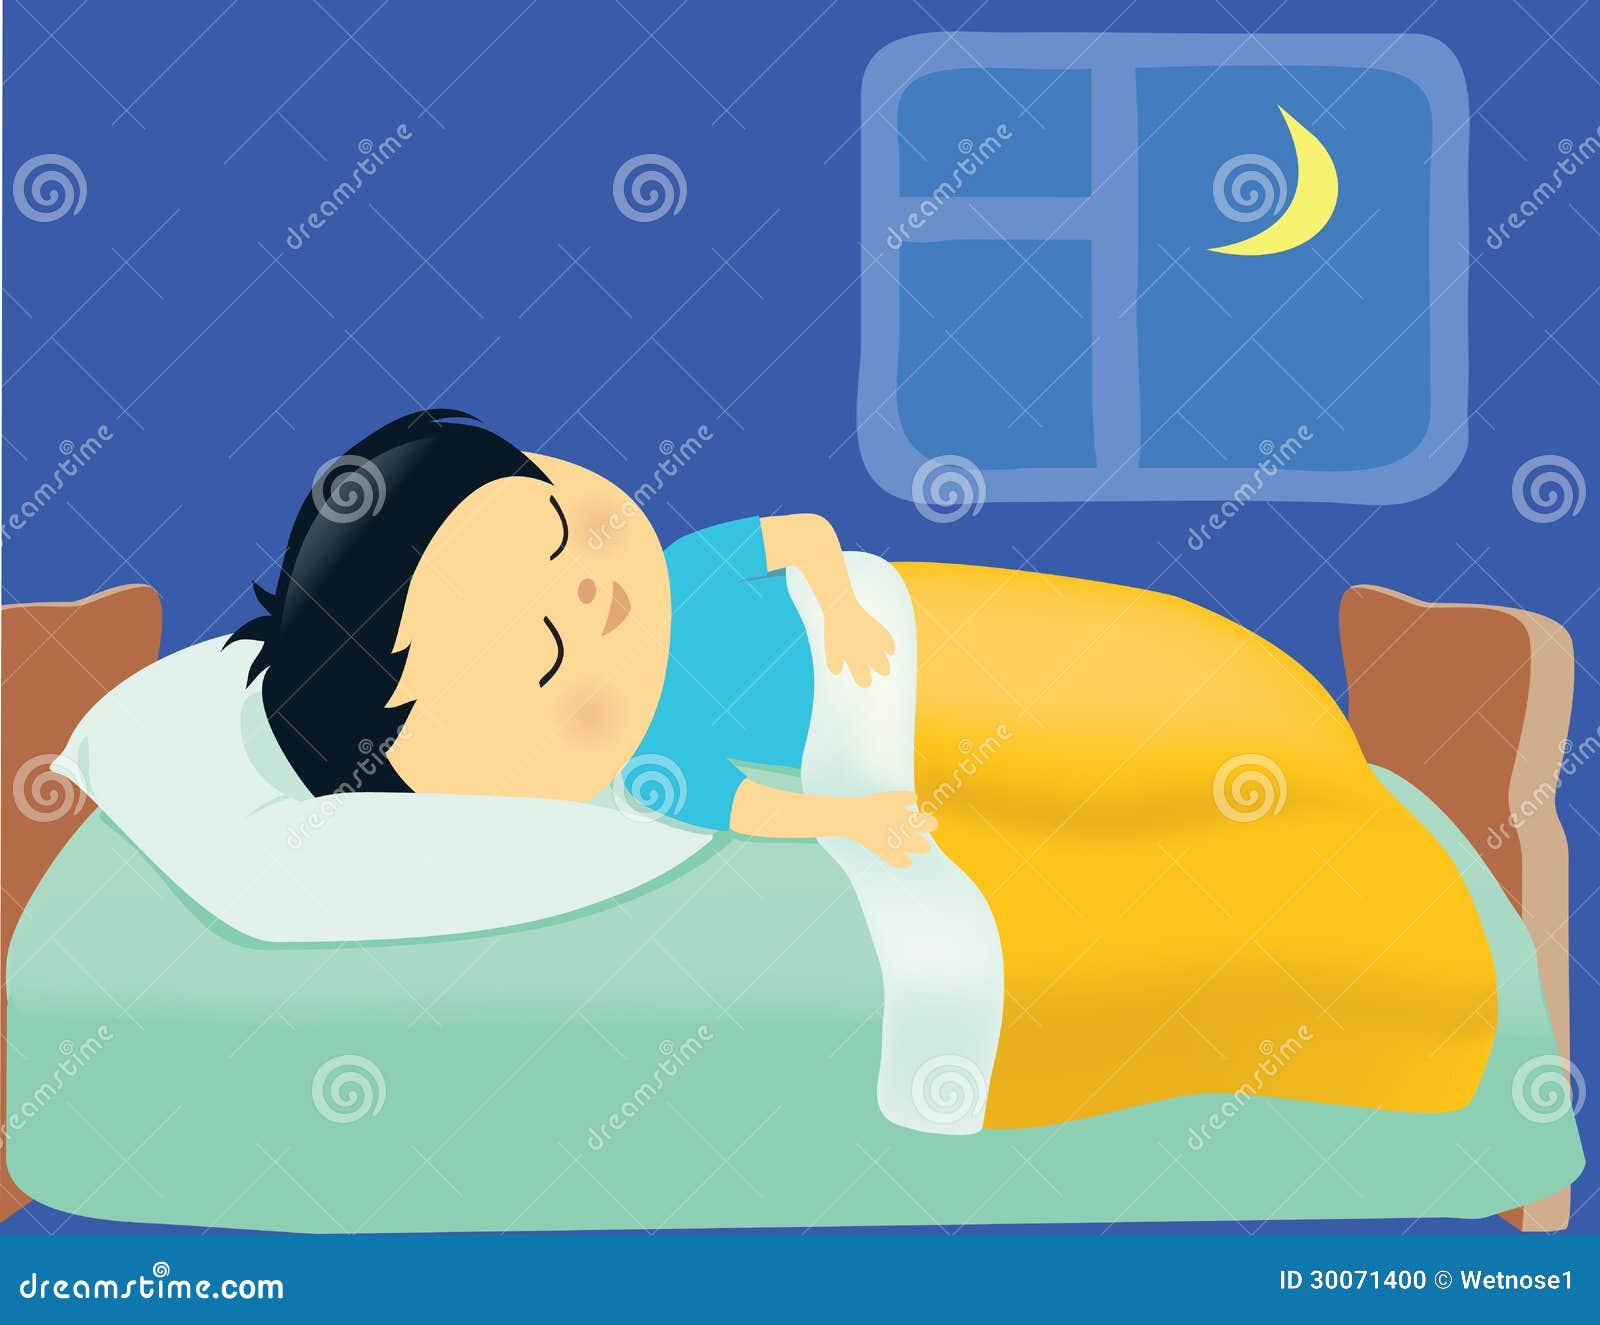 Boy Sleeping Stock Photo - Image: 30071400